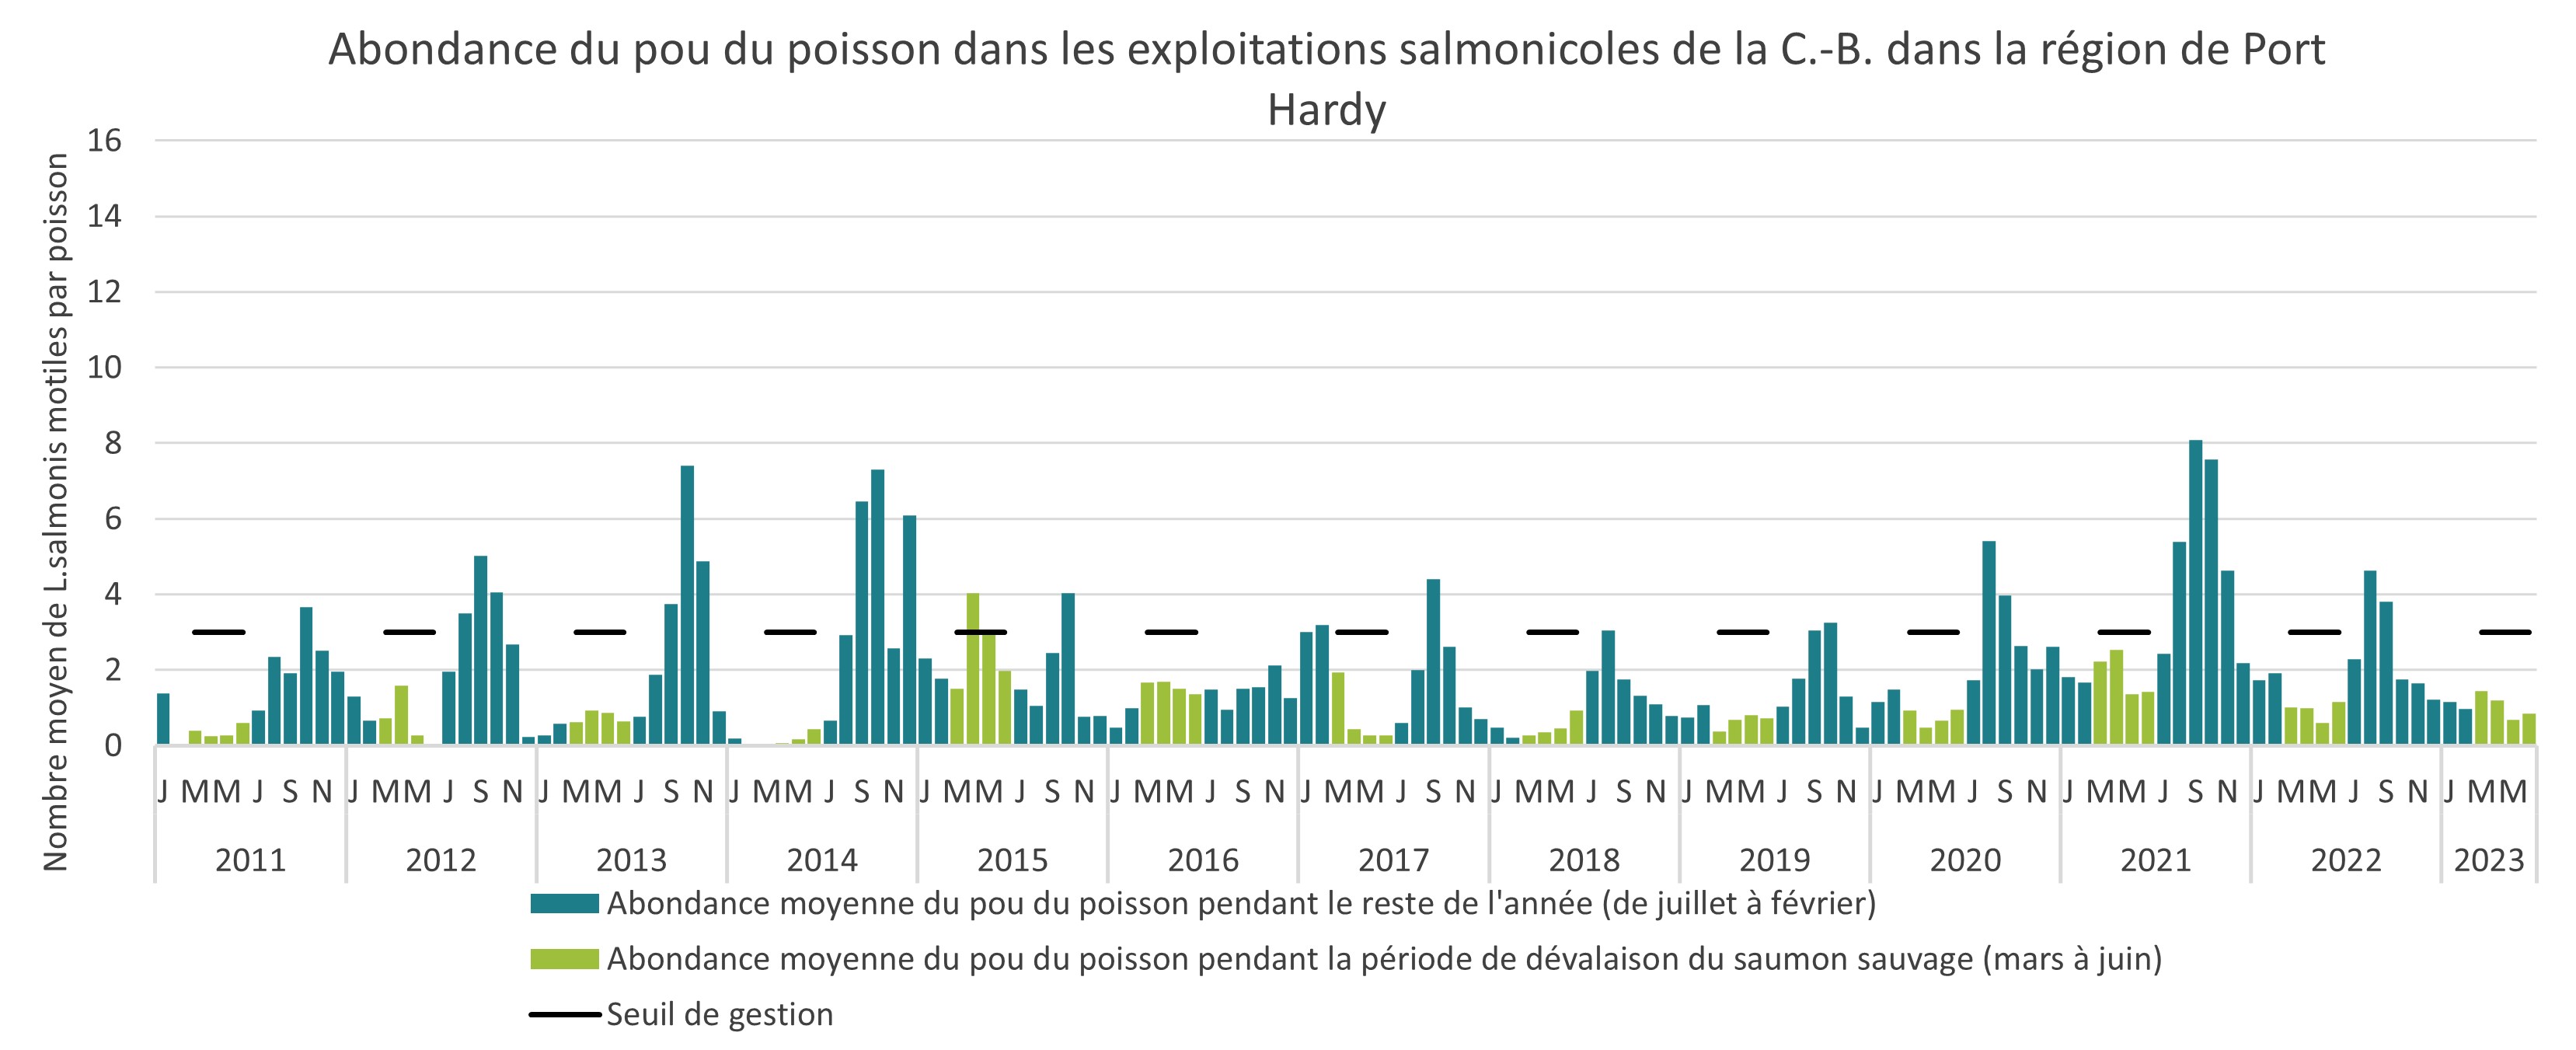 Abondance du pou du poisson dans les exploitations salmonicoles de la C,-B, dans la région de Port Hardy, 2011 à 2022